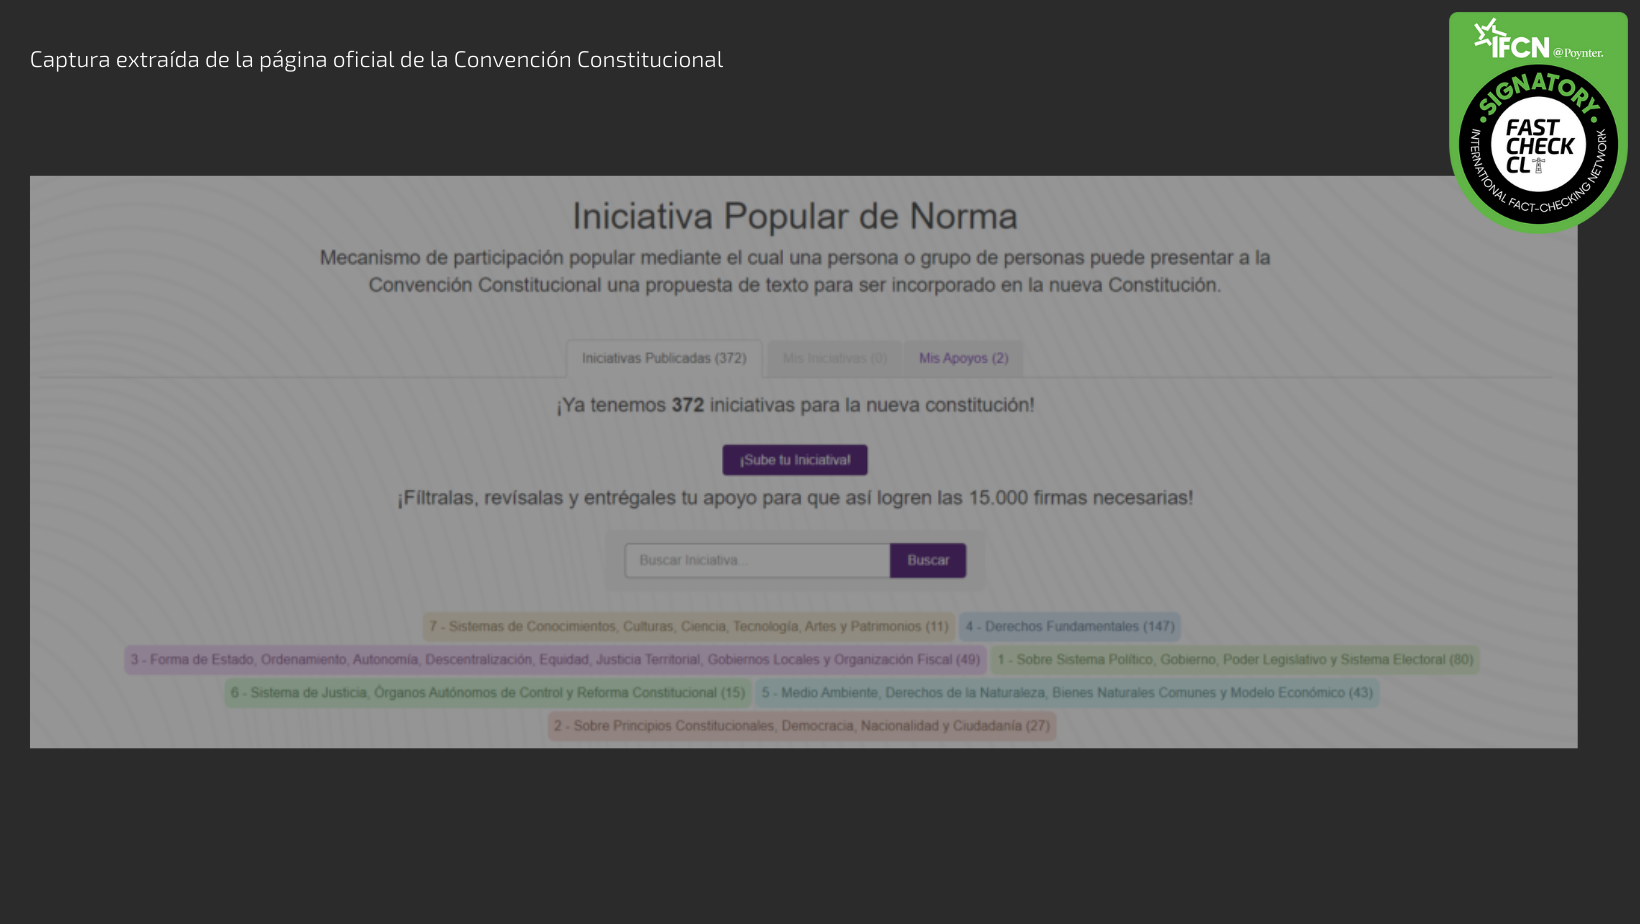 Read more about the article “Iniciativa popular de norma”: el mecanismo digital para participar de la nueva Constitución